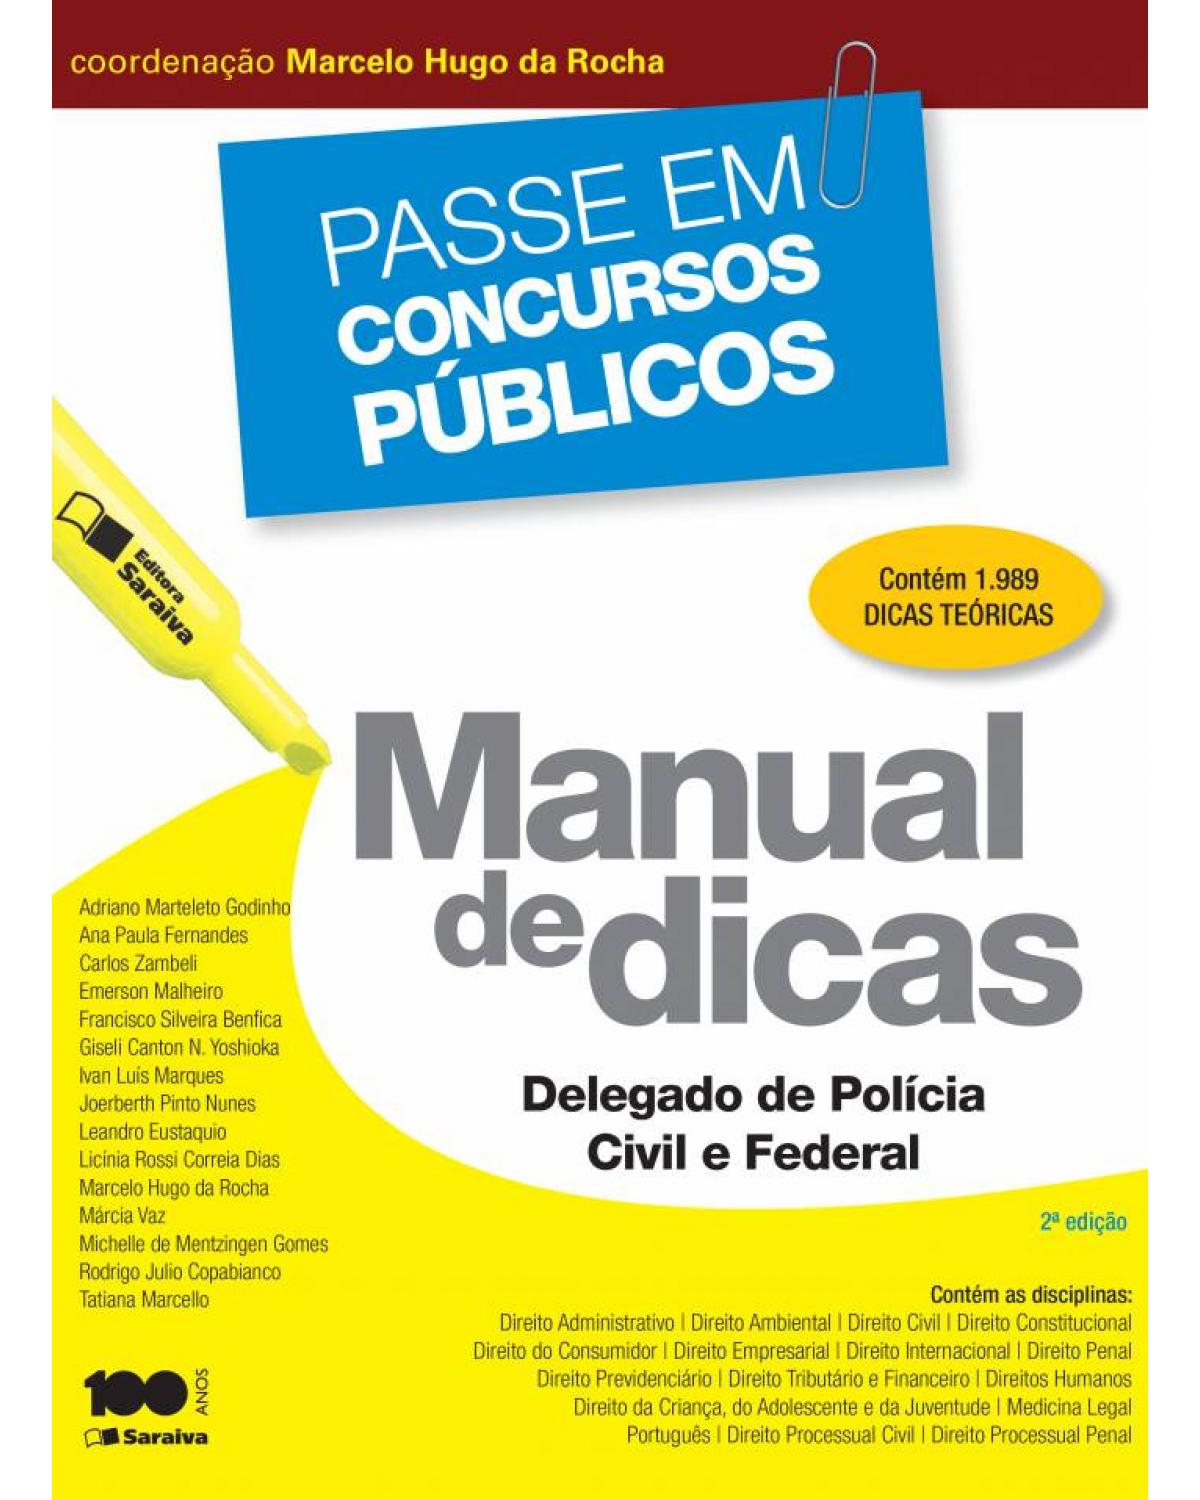 Manual de dicas - delegado de Polícia Civil e Federal - 2ª Edição | 2014